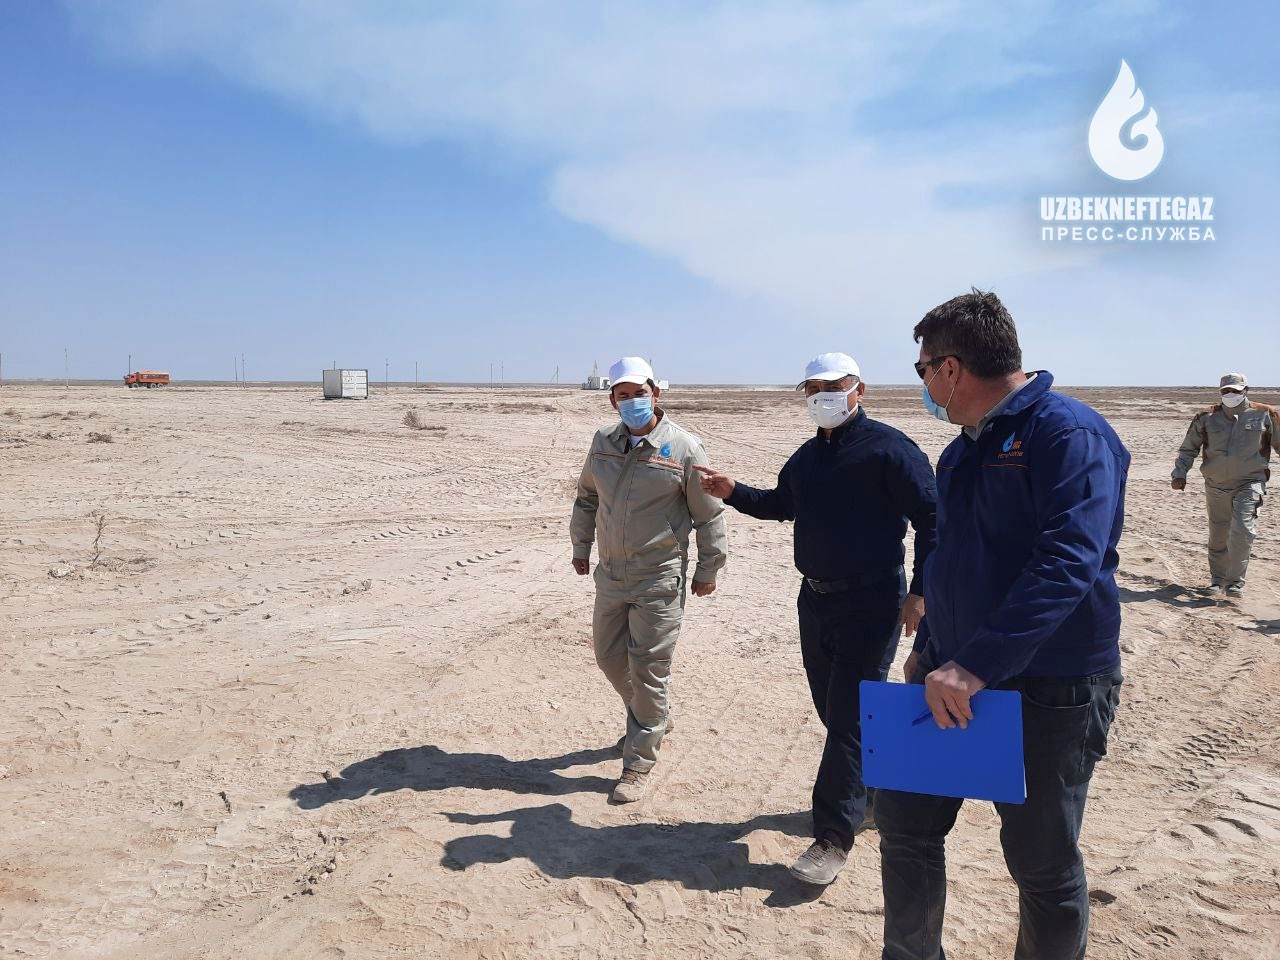 «Узбекнефтегаз»: Председатель Правления изучил текущее состояние добычи природного газа, буровых работ и проектов газопровода в Устюрте